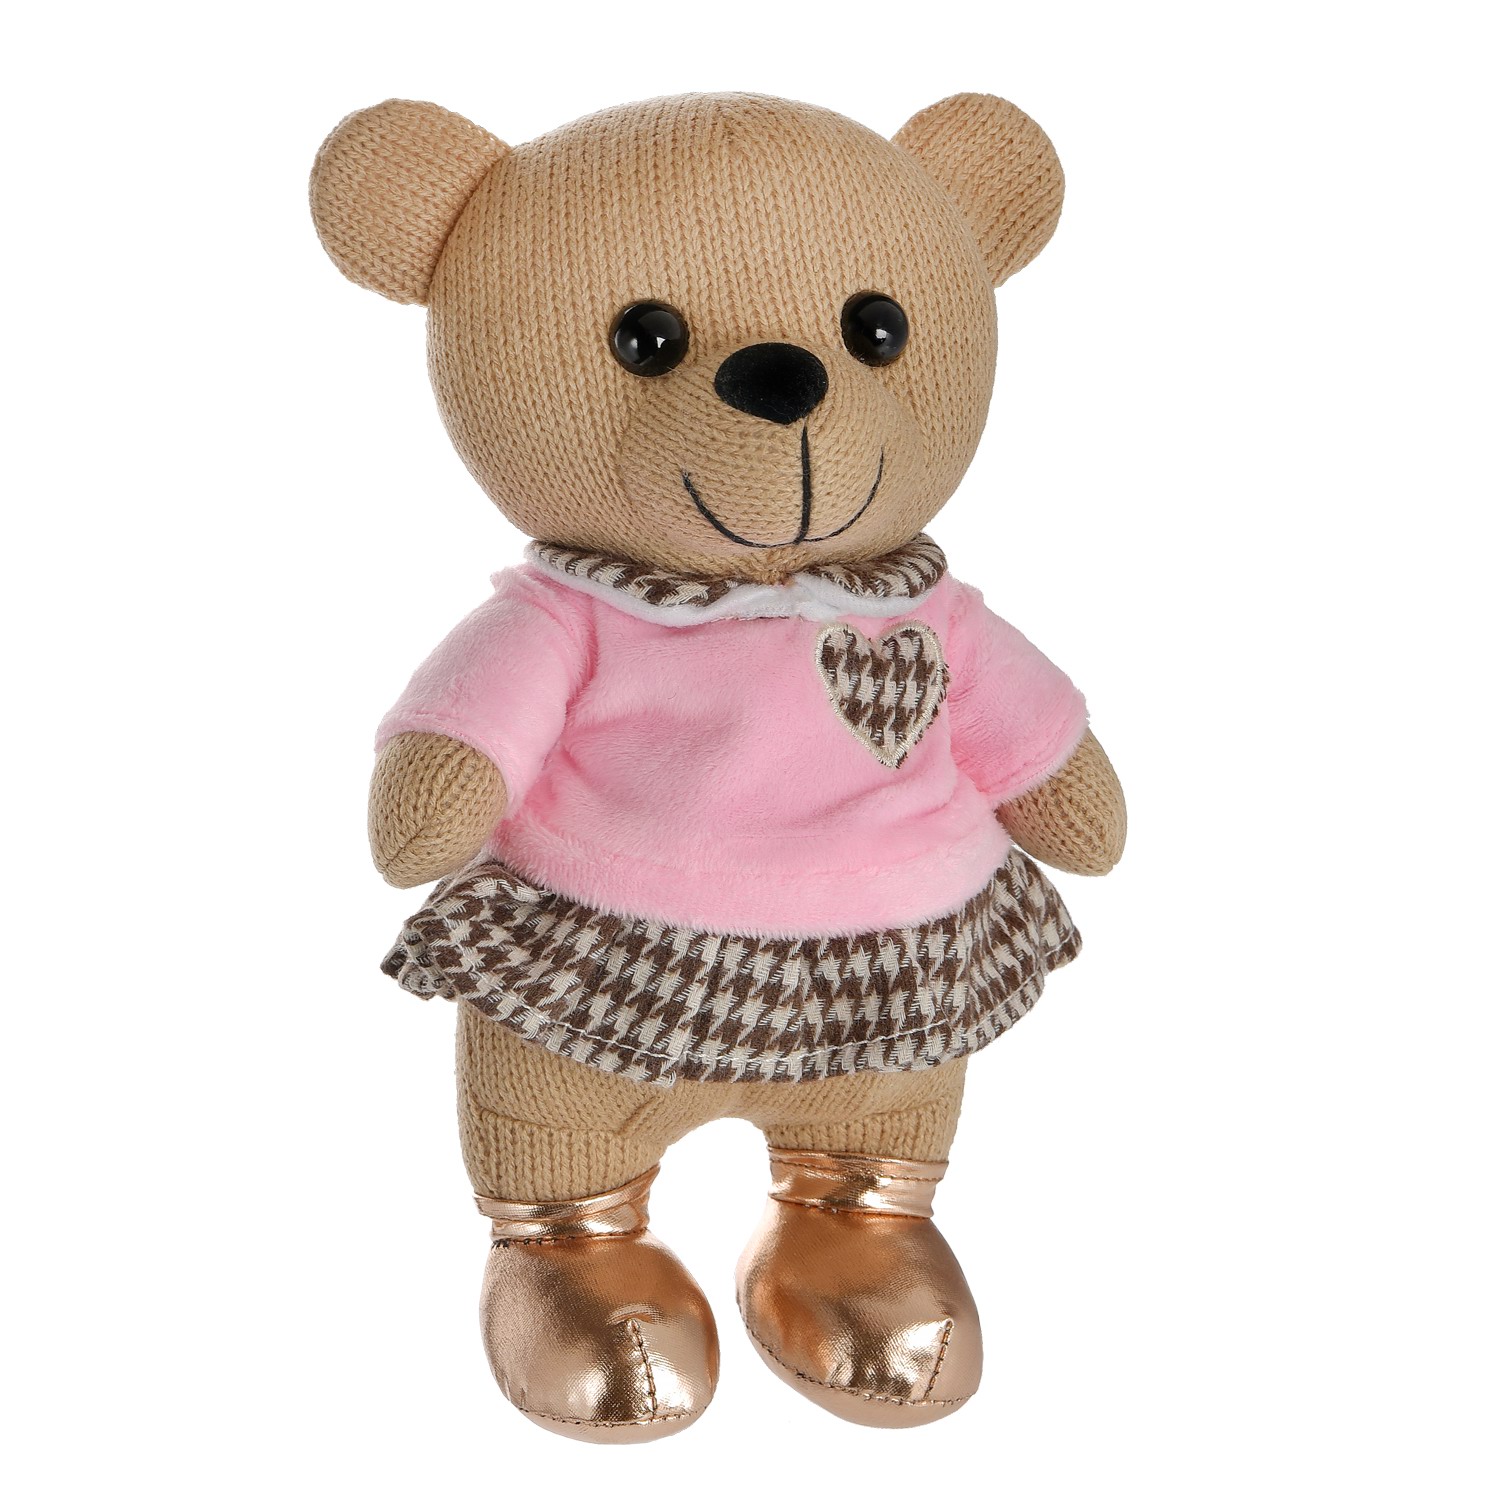 Мягкая игрушка Abtoys Knitted. Мишка вязаный девочка в розовом джемпере 22см M4864 мягкая игрушка abtoys knitted хамелеон вязаный 34 см